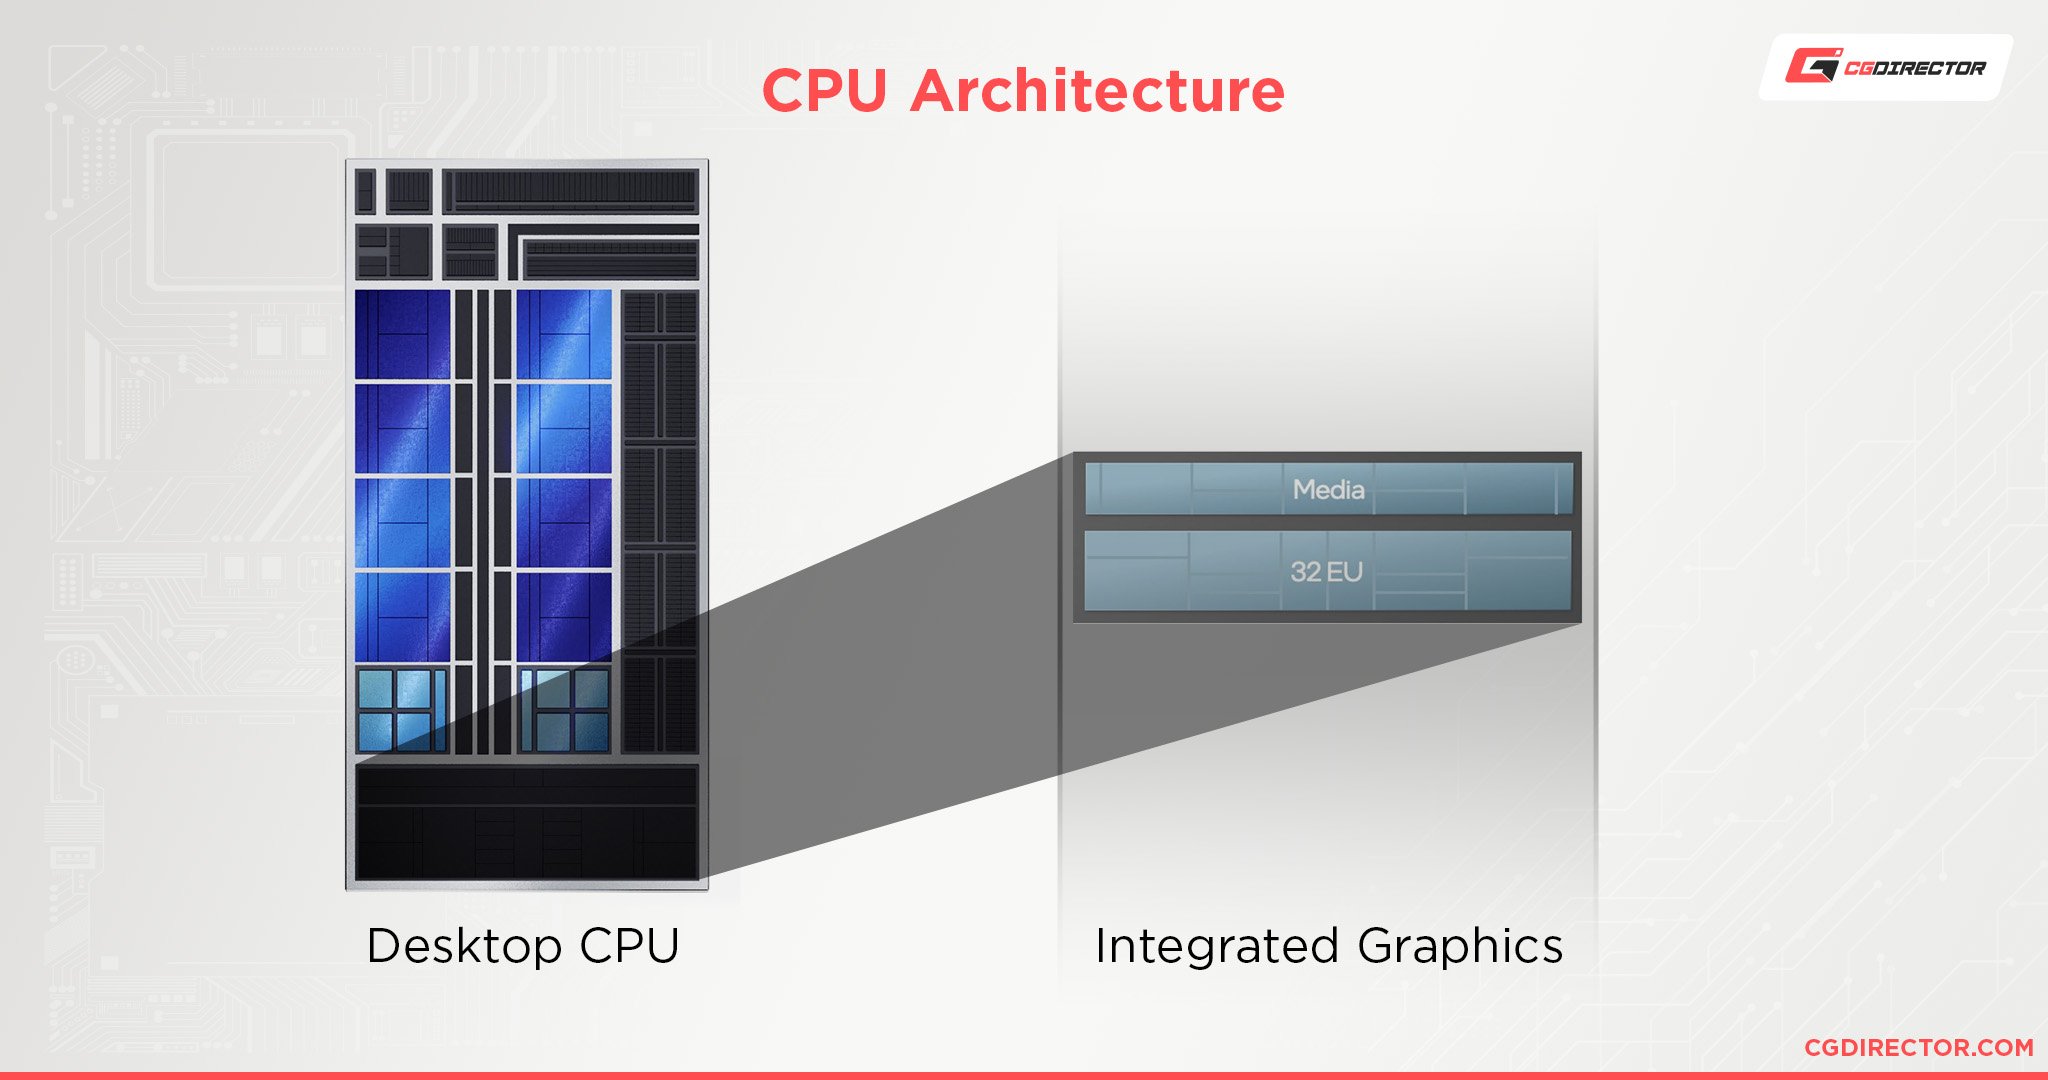 CPU Architecture with iGPU